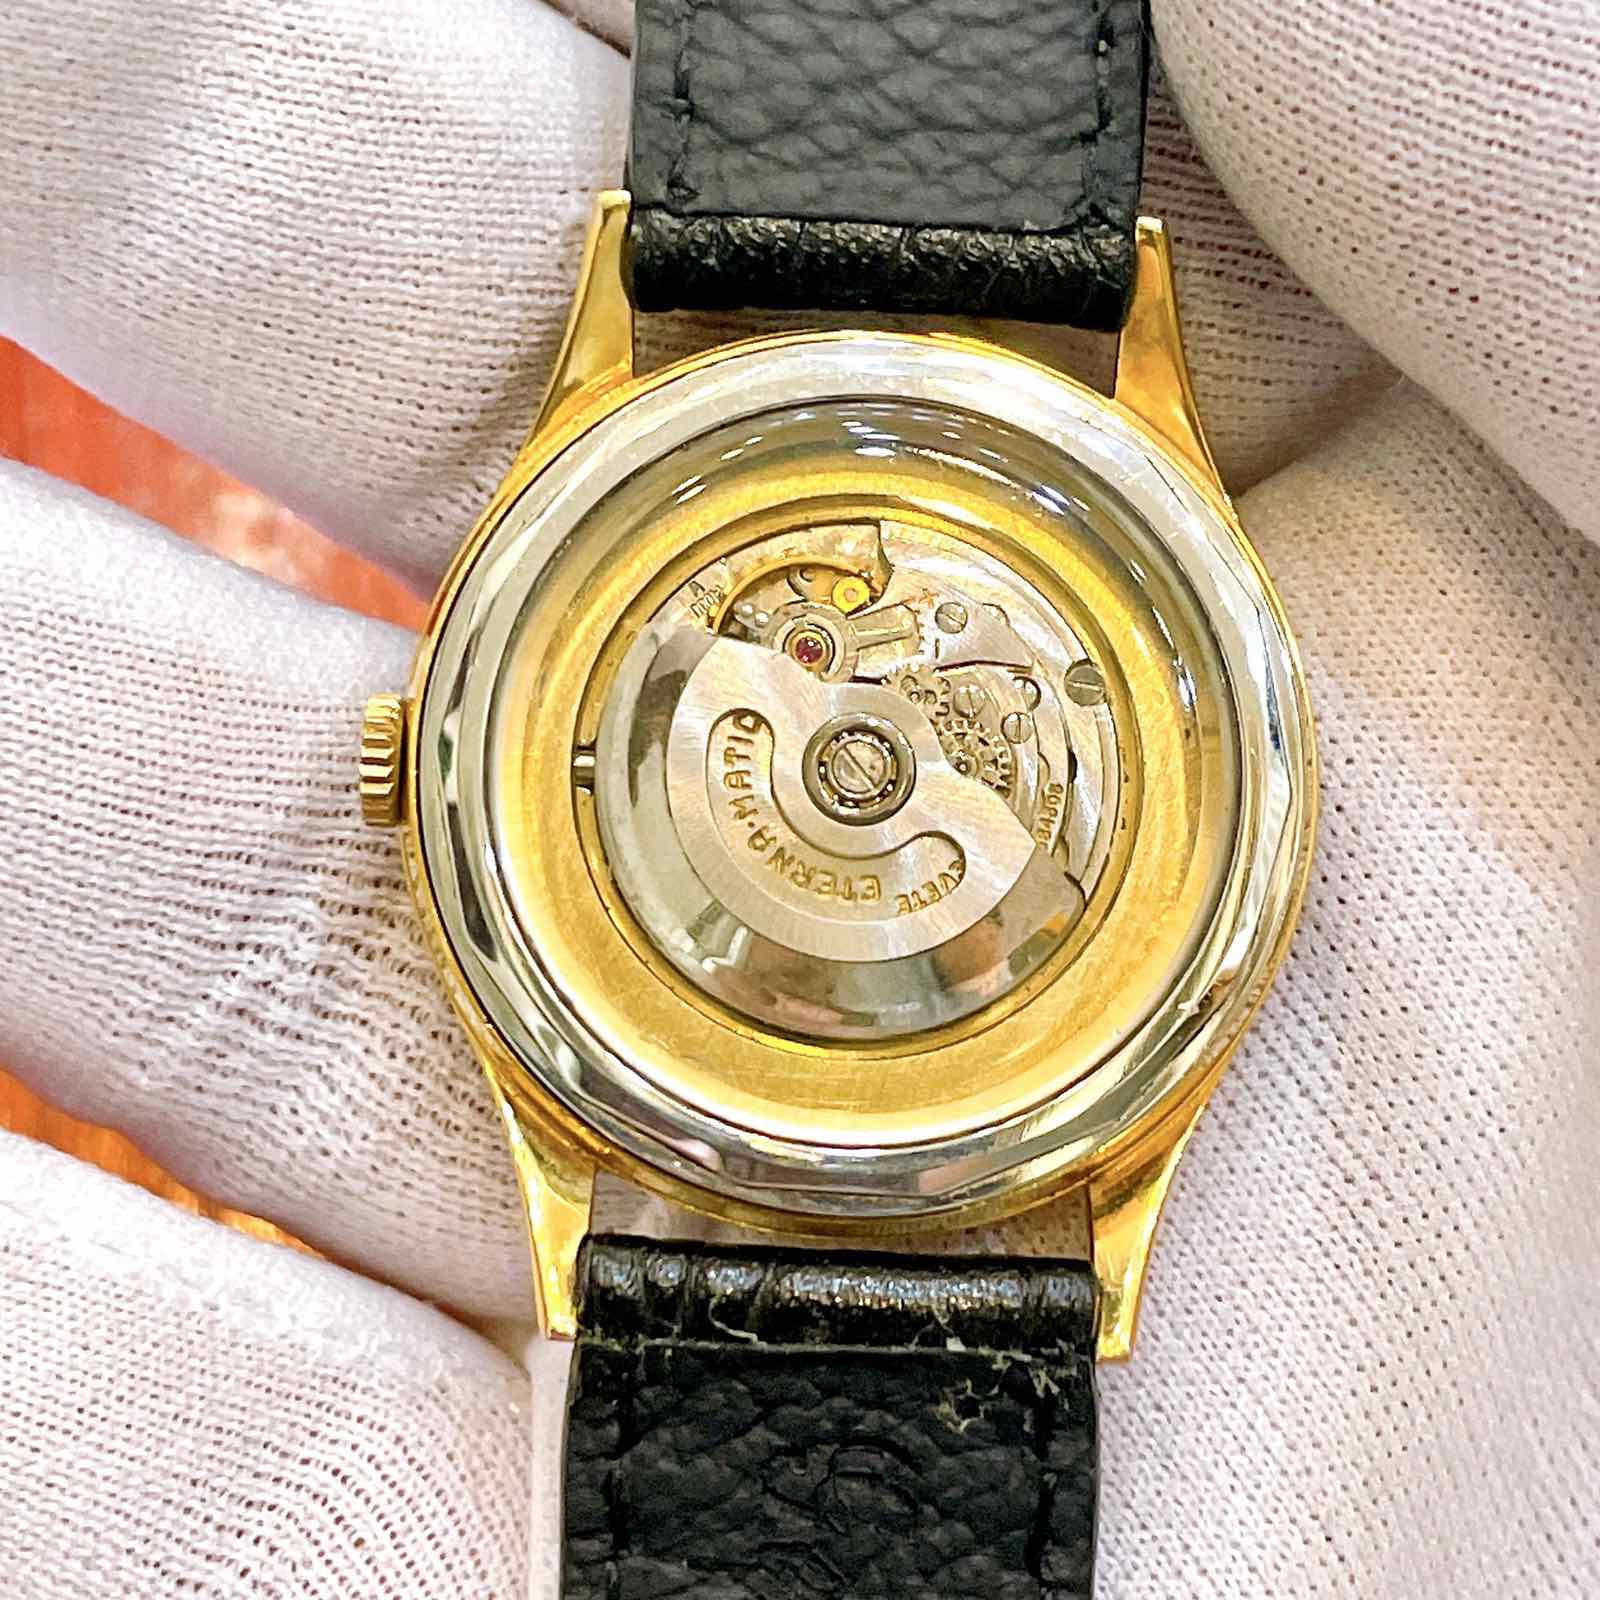 Đồng hồ ETERNA MATIC top thương hiệu đồng hồ nổi tiếng nhất Thuỵ Sỹ